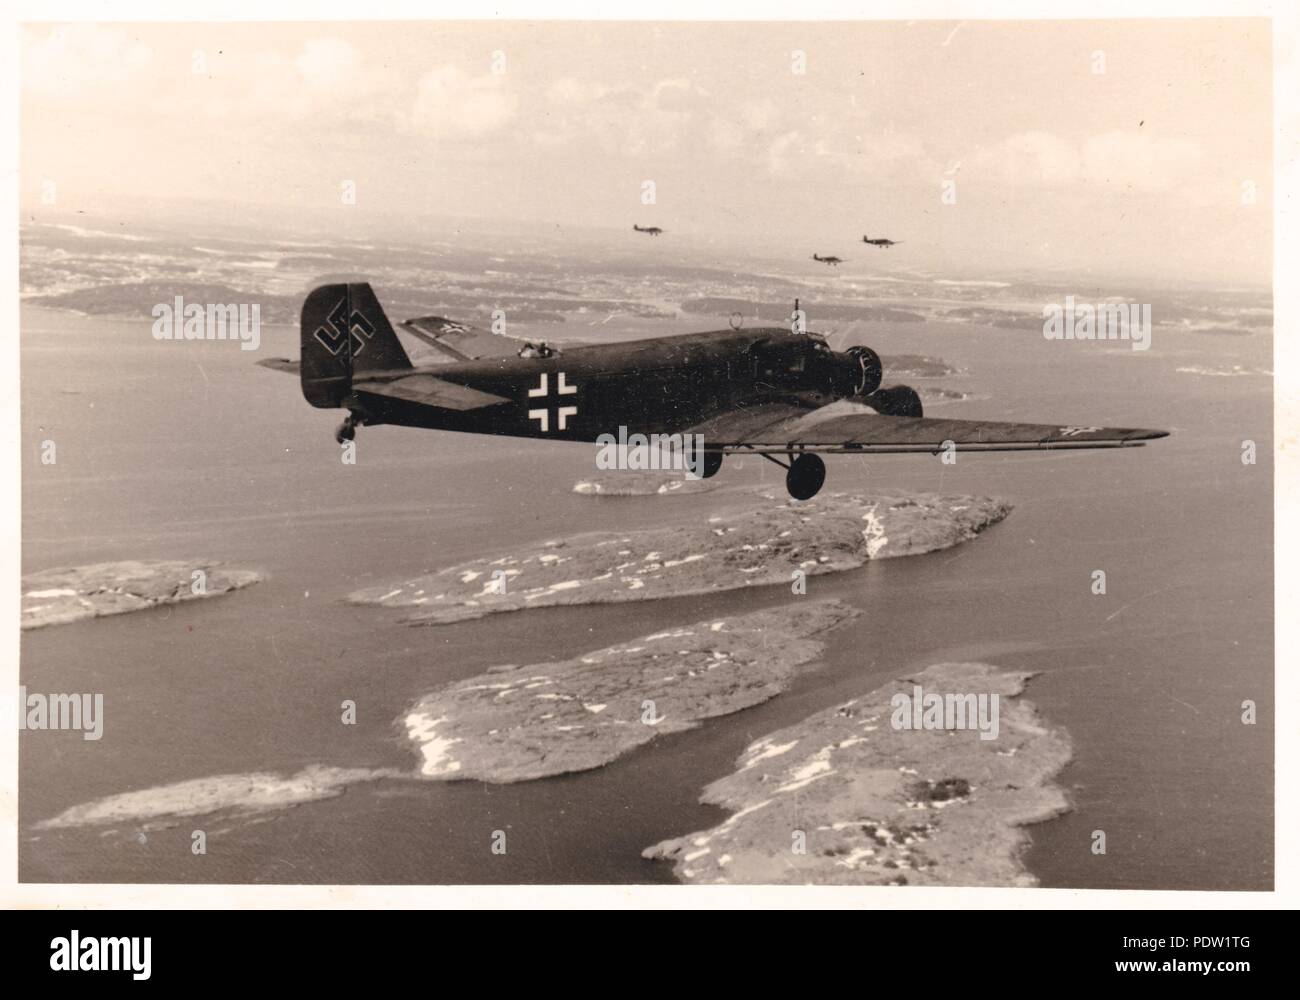 Droit de l'album photo de Karl Oberfeldwebel Gendner de 1. La Kampfgeschwader 40 Staffel, air-air : photographie d'un vol de Junkers Ju 52/3m de KGzbV 1 en route de la Norvège à Aalborg au Danemark, en mai 1940. L'aéronef le plus proche est 1Z +GK de 2./KGzbV Staffel 1. D'intérêt est la croix gammée surdimensionnée sur la queue de cet avion. Karl Gendner a été un projet pilote avec 3./KGzbV 1 en ce moment. Banque D'Images